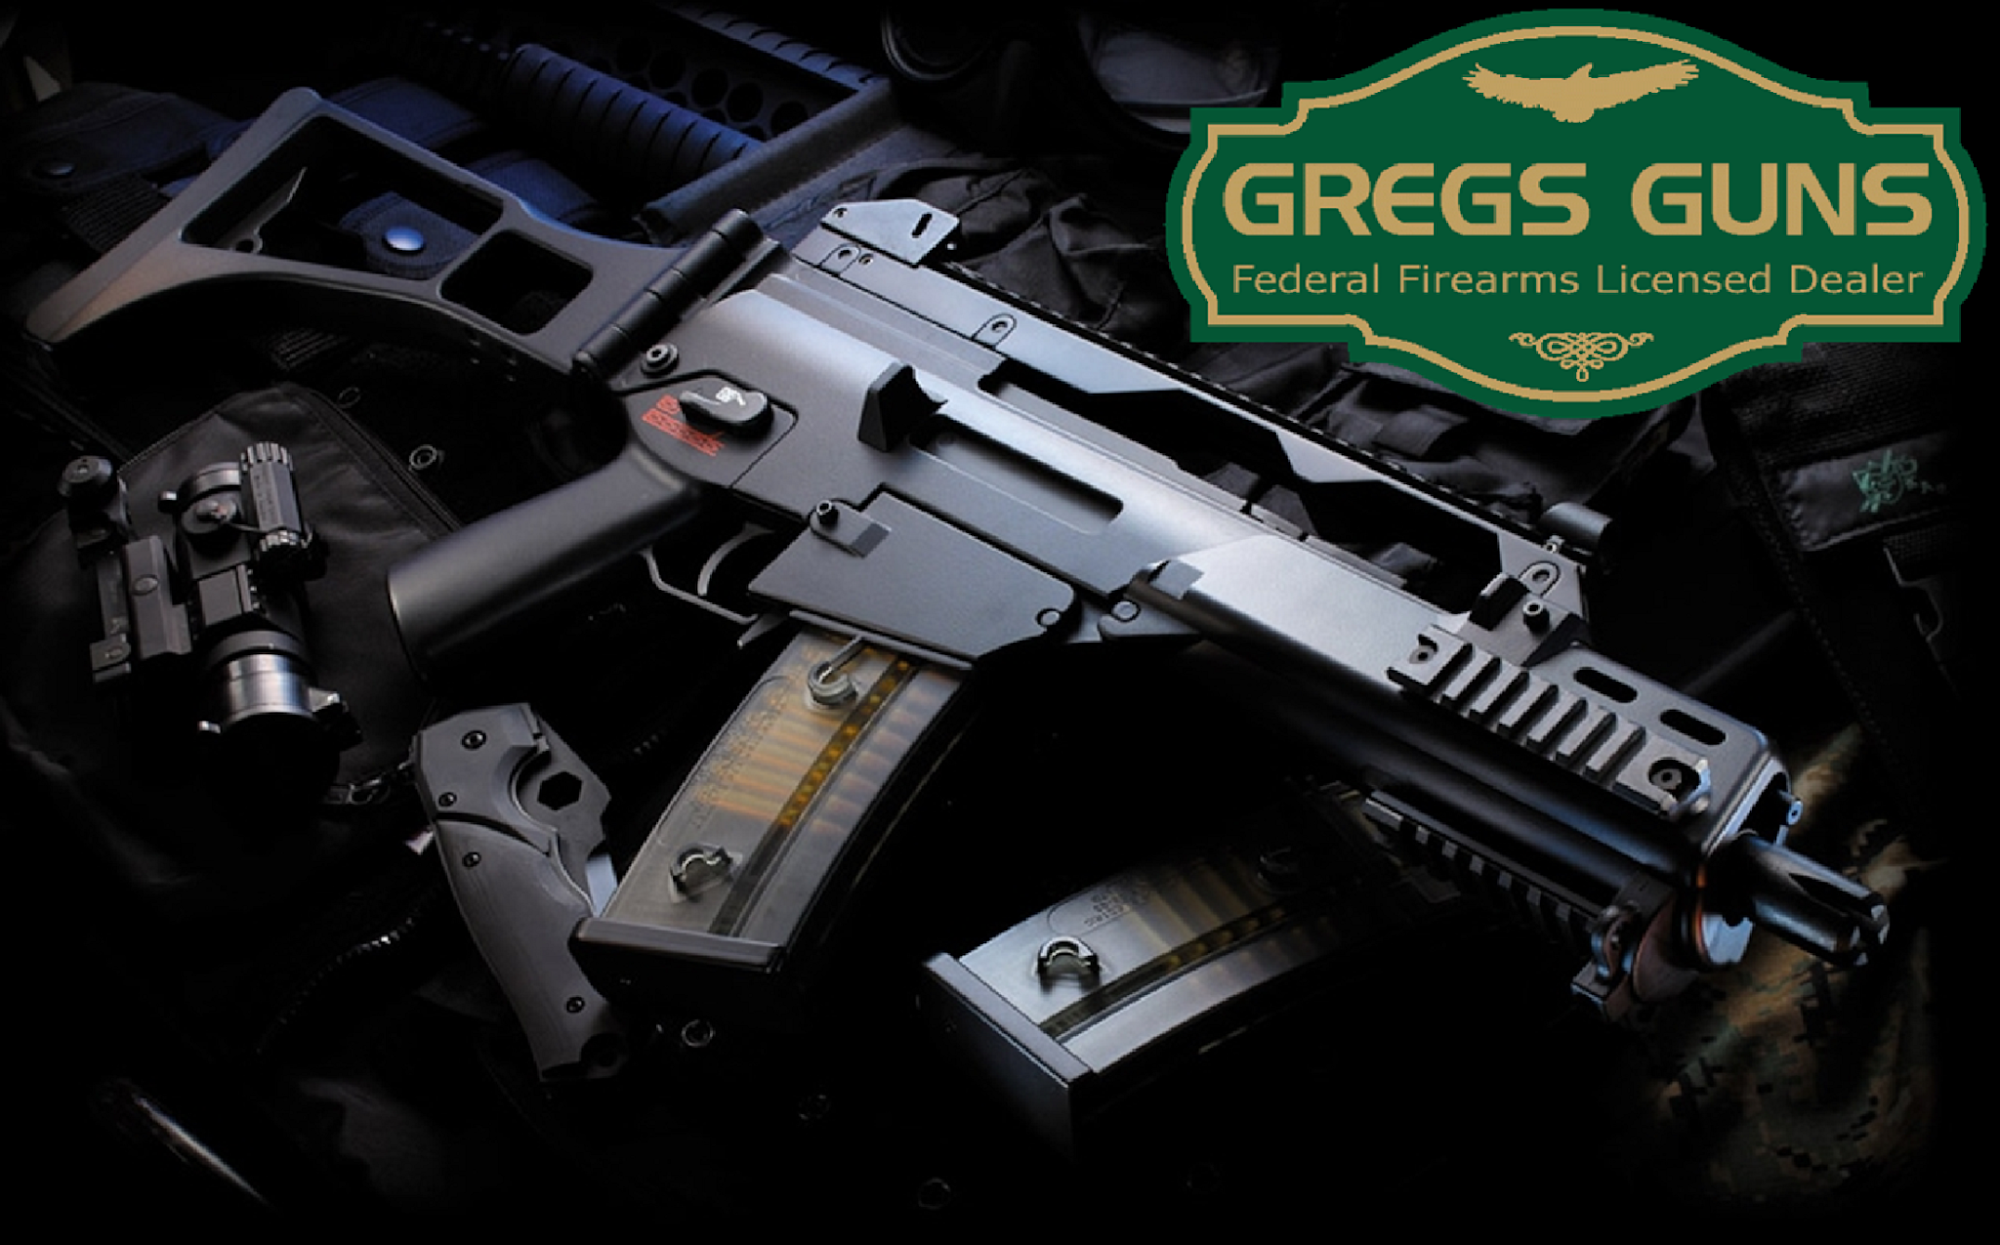 GREGS GUNS LLC